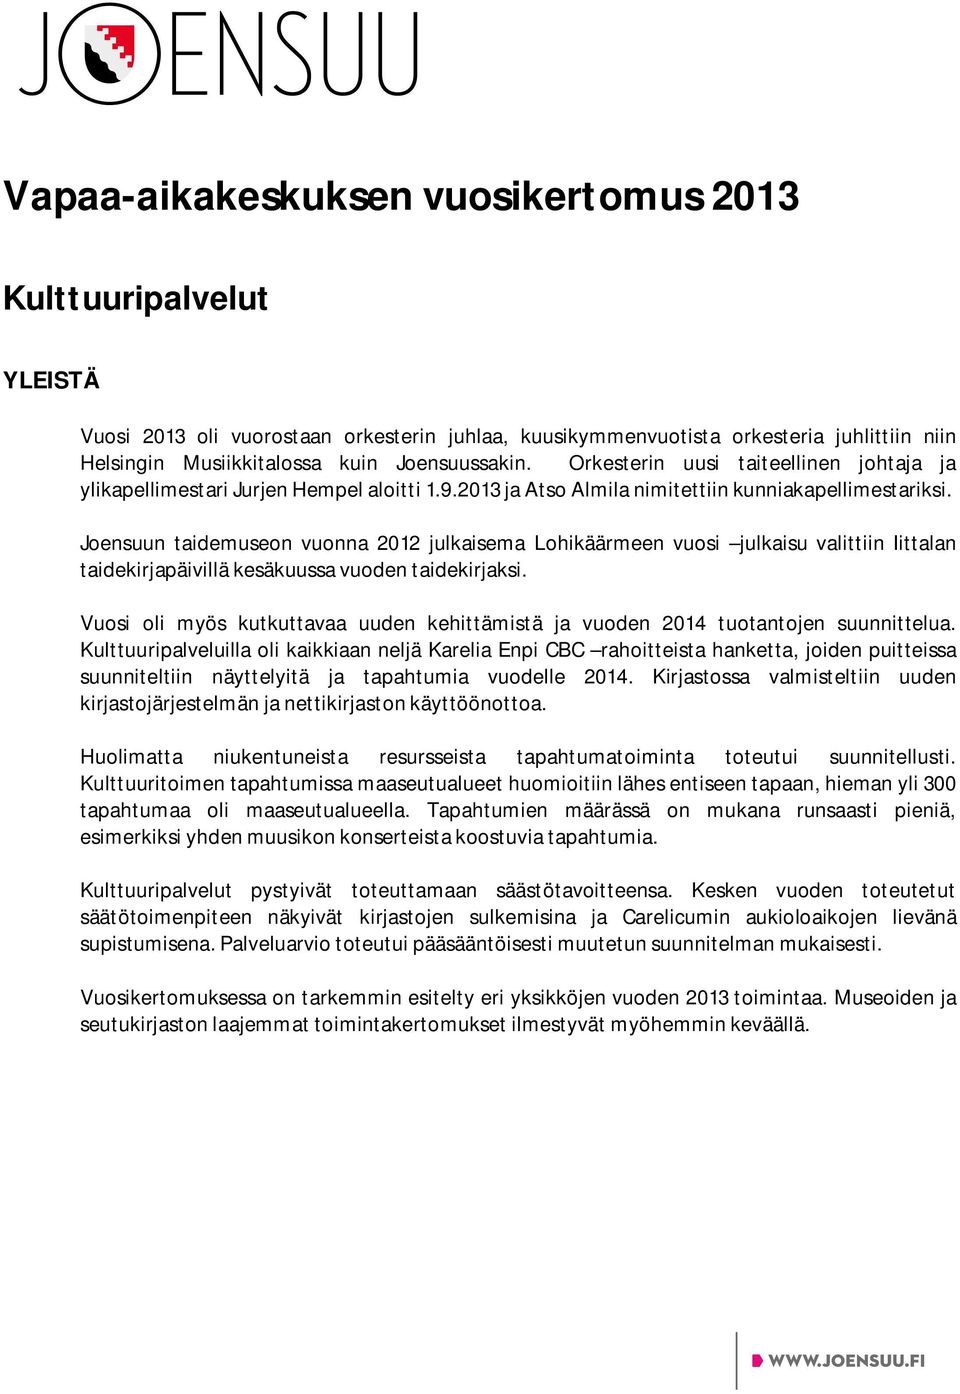 Joensuun taidemuseon vuonna 2012 julkaisema Lohikäärmeen vuosi julkaisu valittiin Iittalan taidekirjapäivillä kesäkuussa vuoden taidekirjaksi.